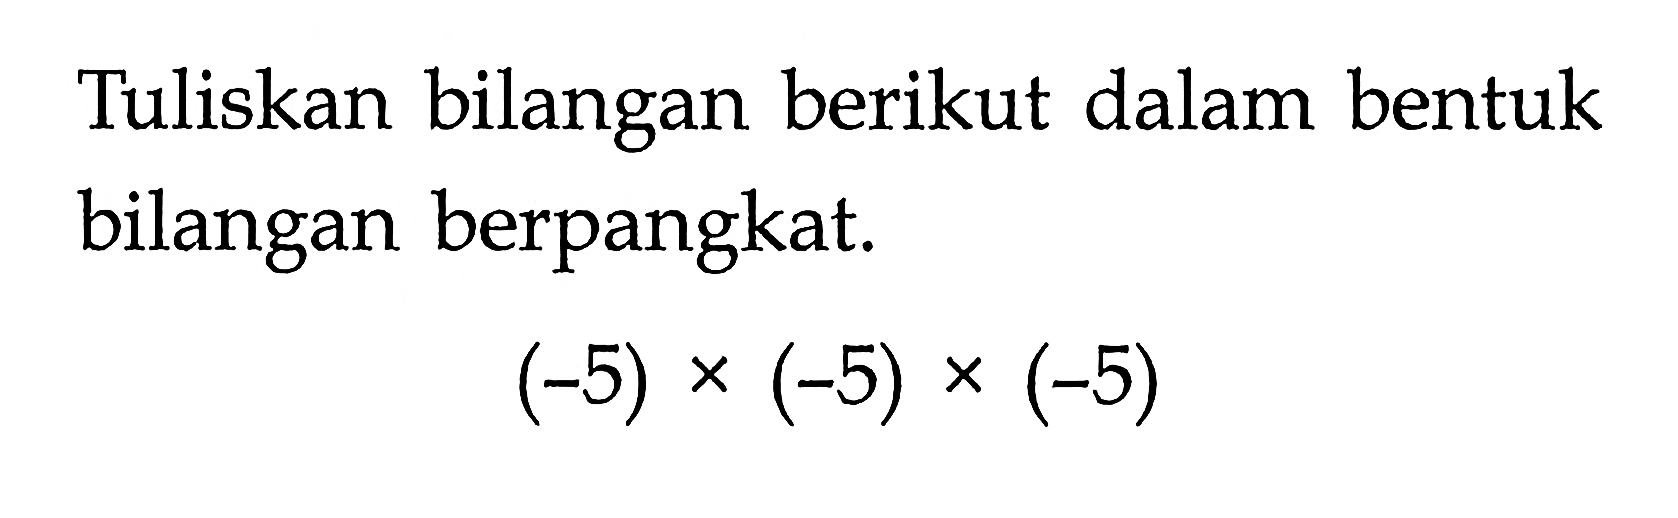 Tuliskan bilangan berikut dalam bentuk bilangan berpangkat. (-5) x (-5) x (-5)